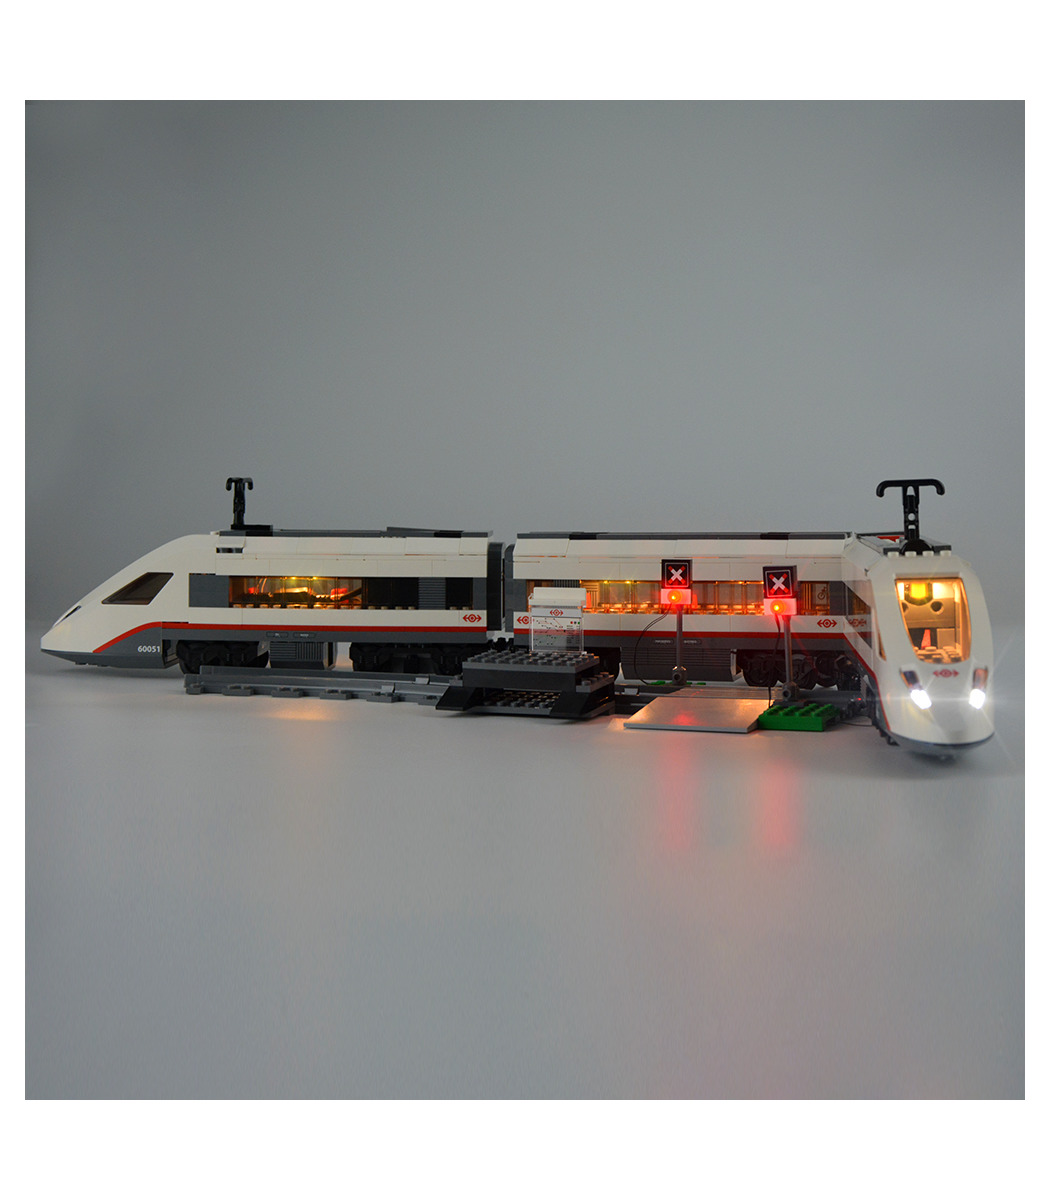 New Led Light Kit For LEGO Trains High-speed Passenger Model Lighting Set 60051 